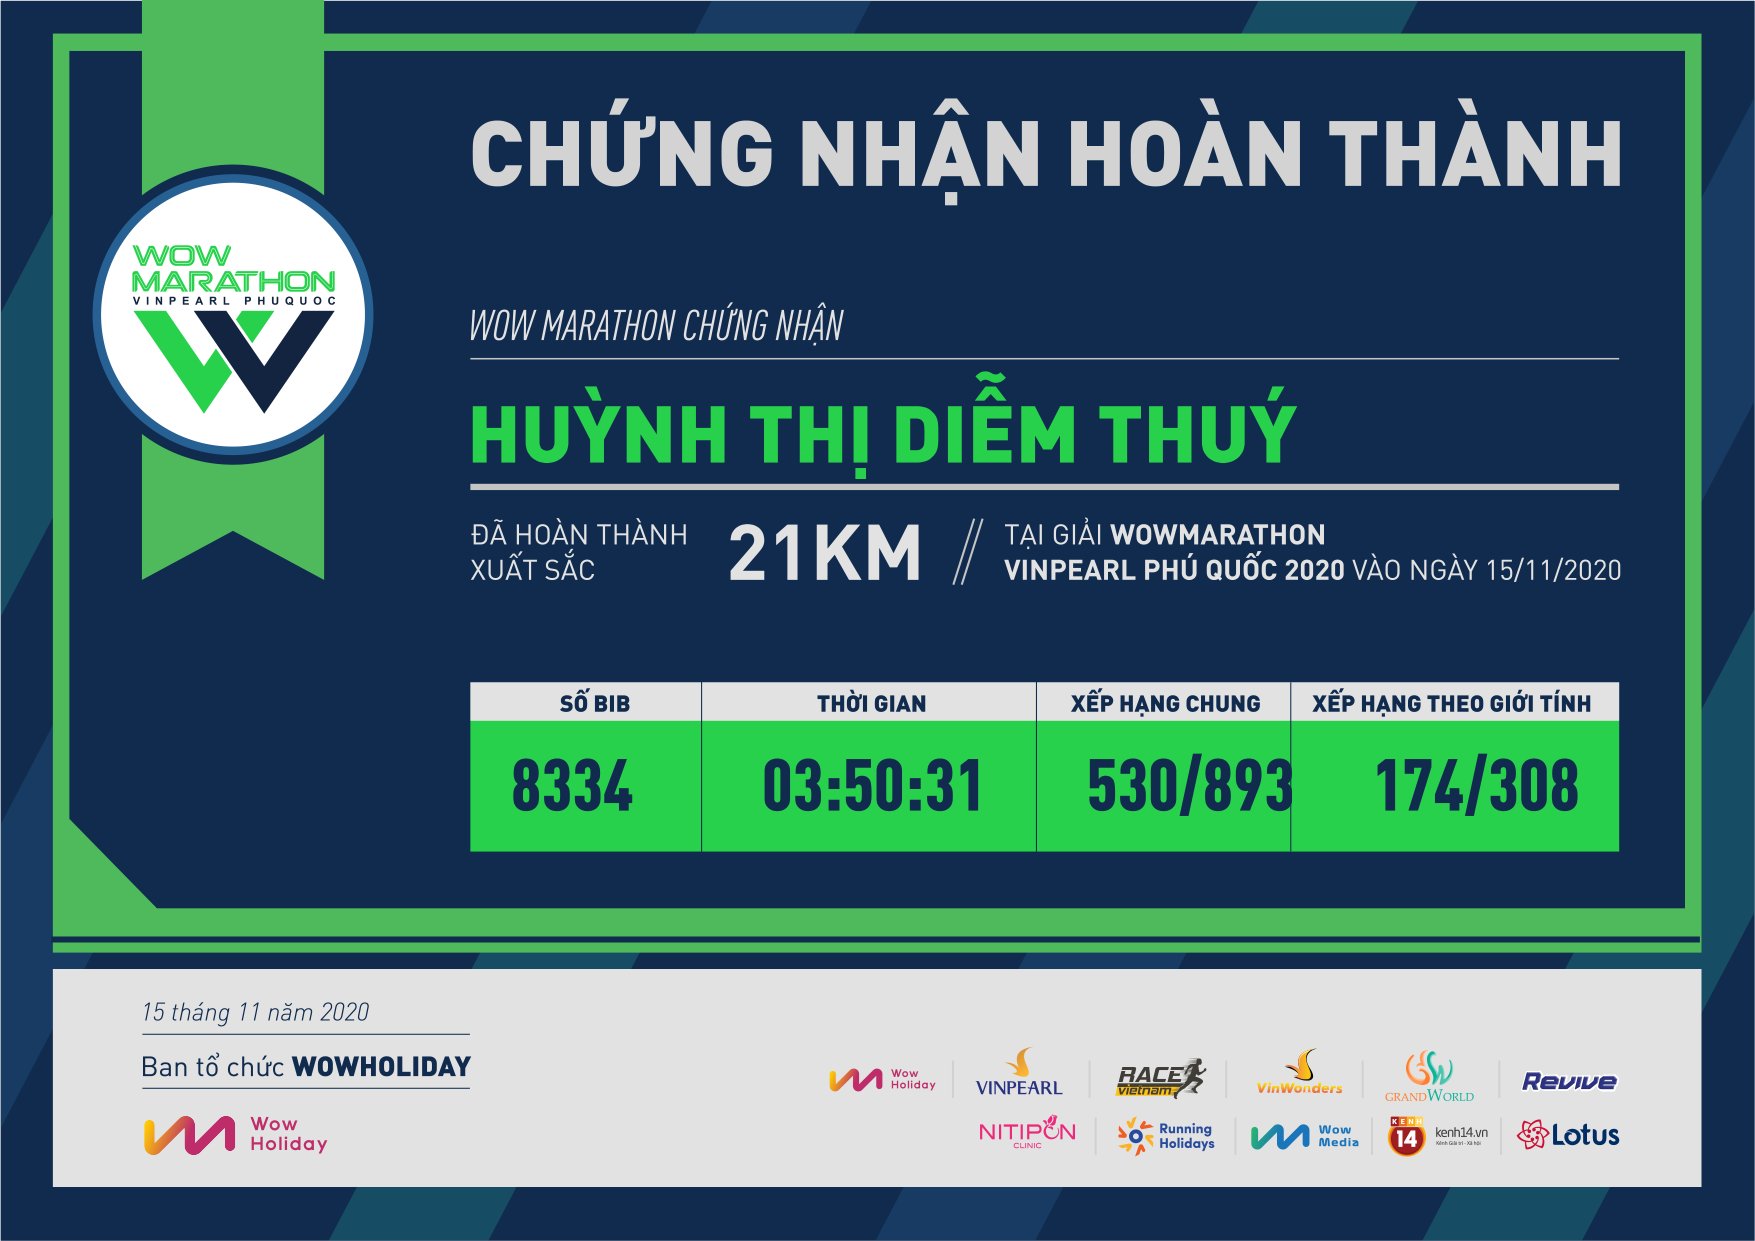 8334 - Huỳnh Thị Diễm Thuý